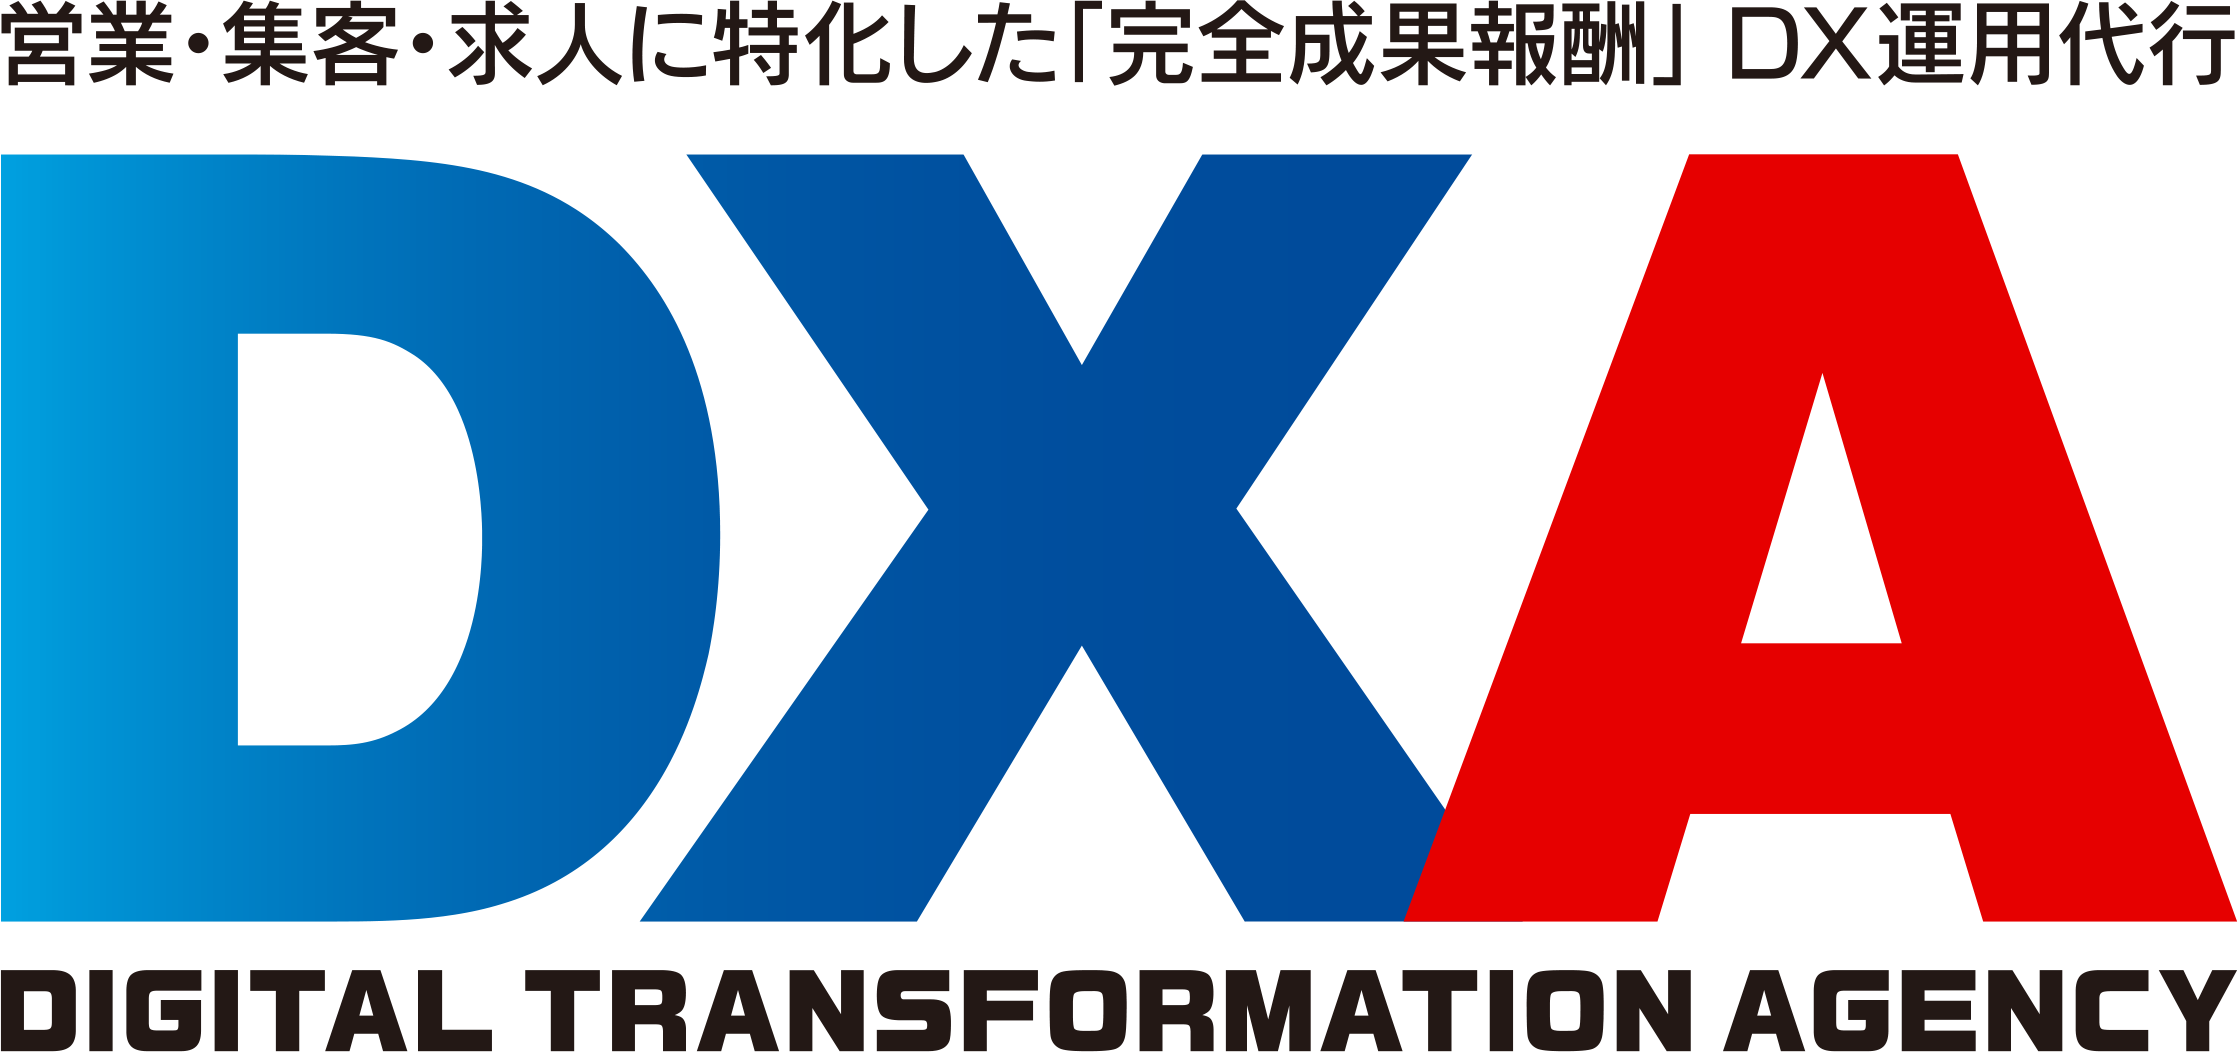 中小企業の営業・集客・求人をデジタルトランスフォーメーション（DX）化によりサポートするサービス「DXA」